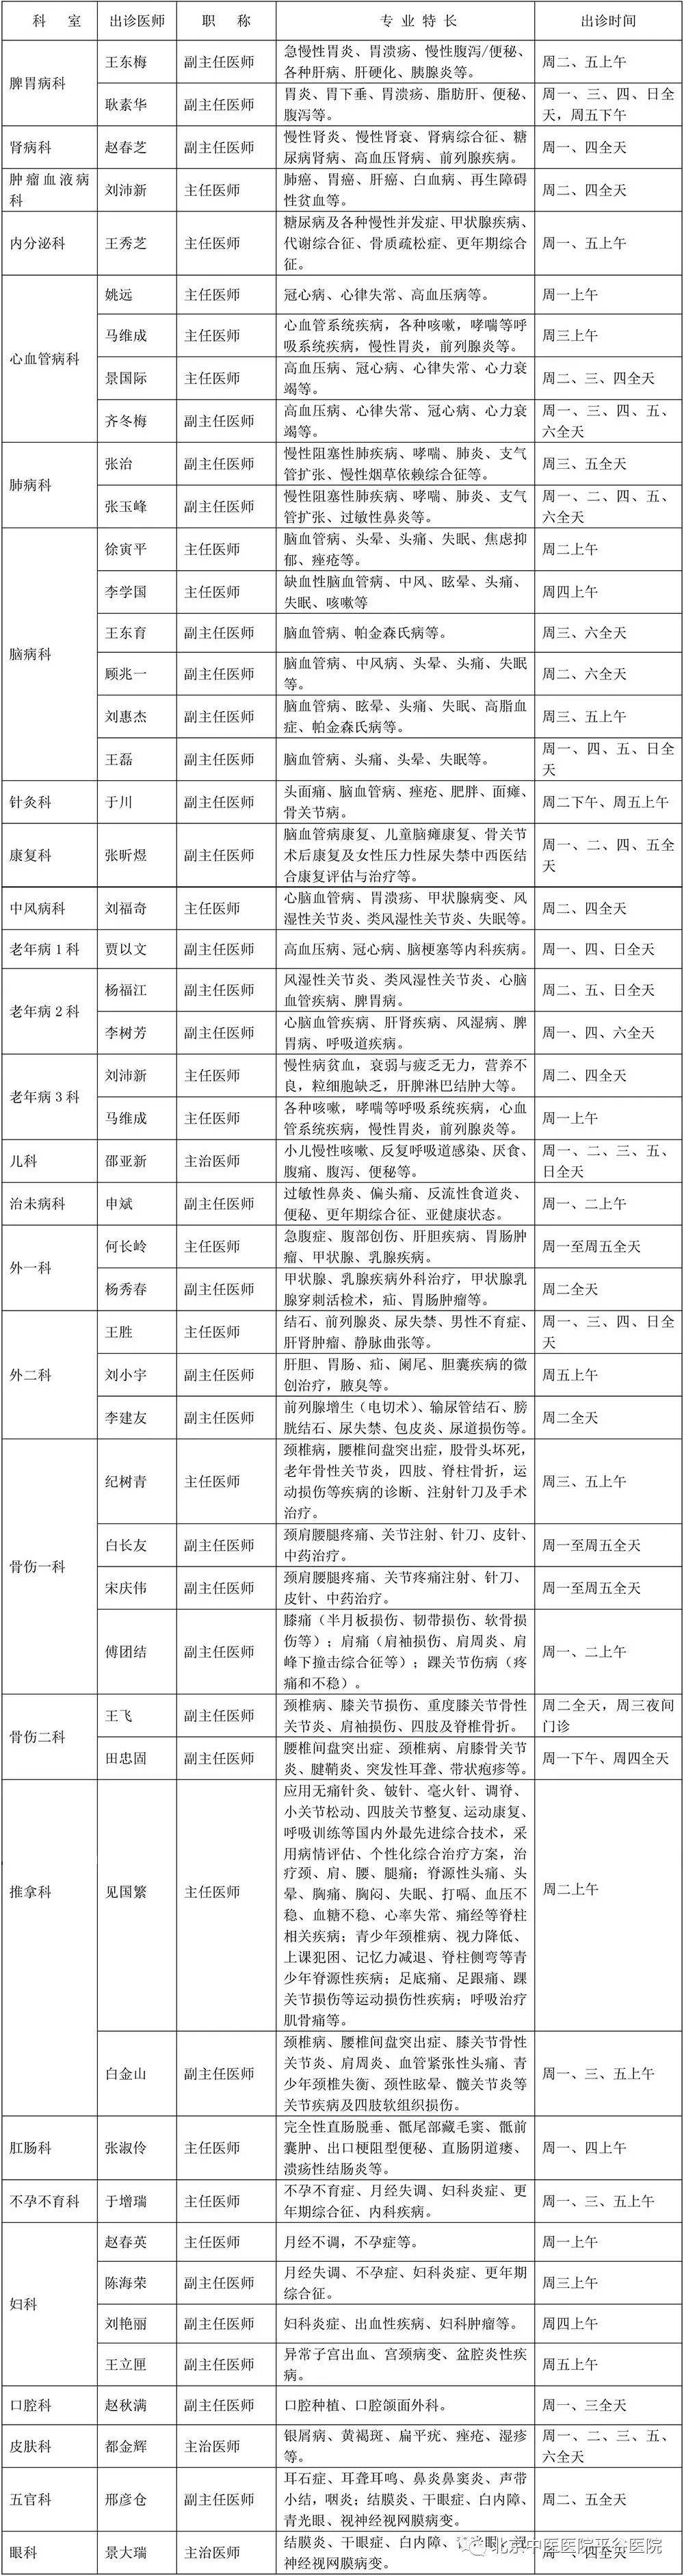 包含北京中医院代挂专家号，减少患者等待就医的时间的词条